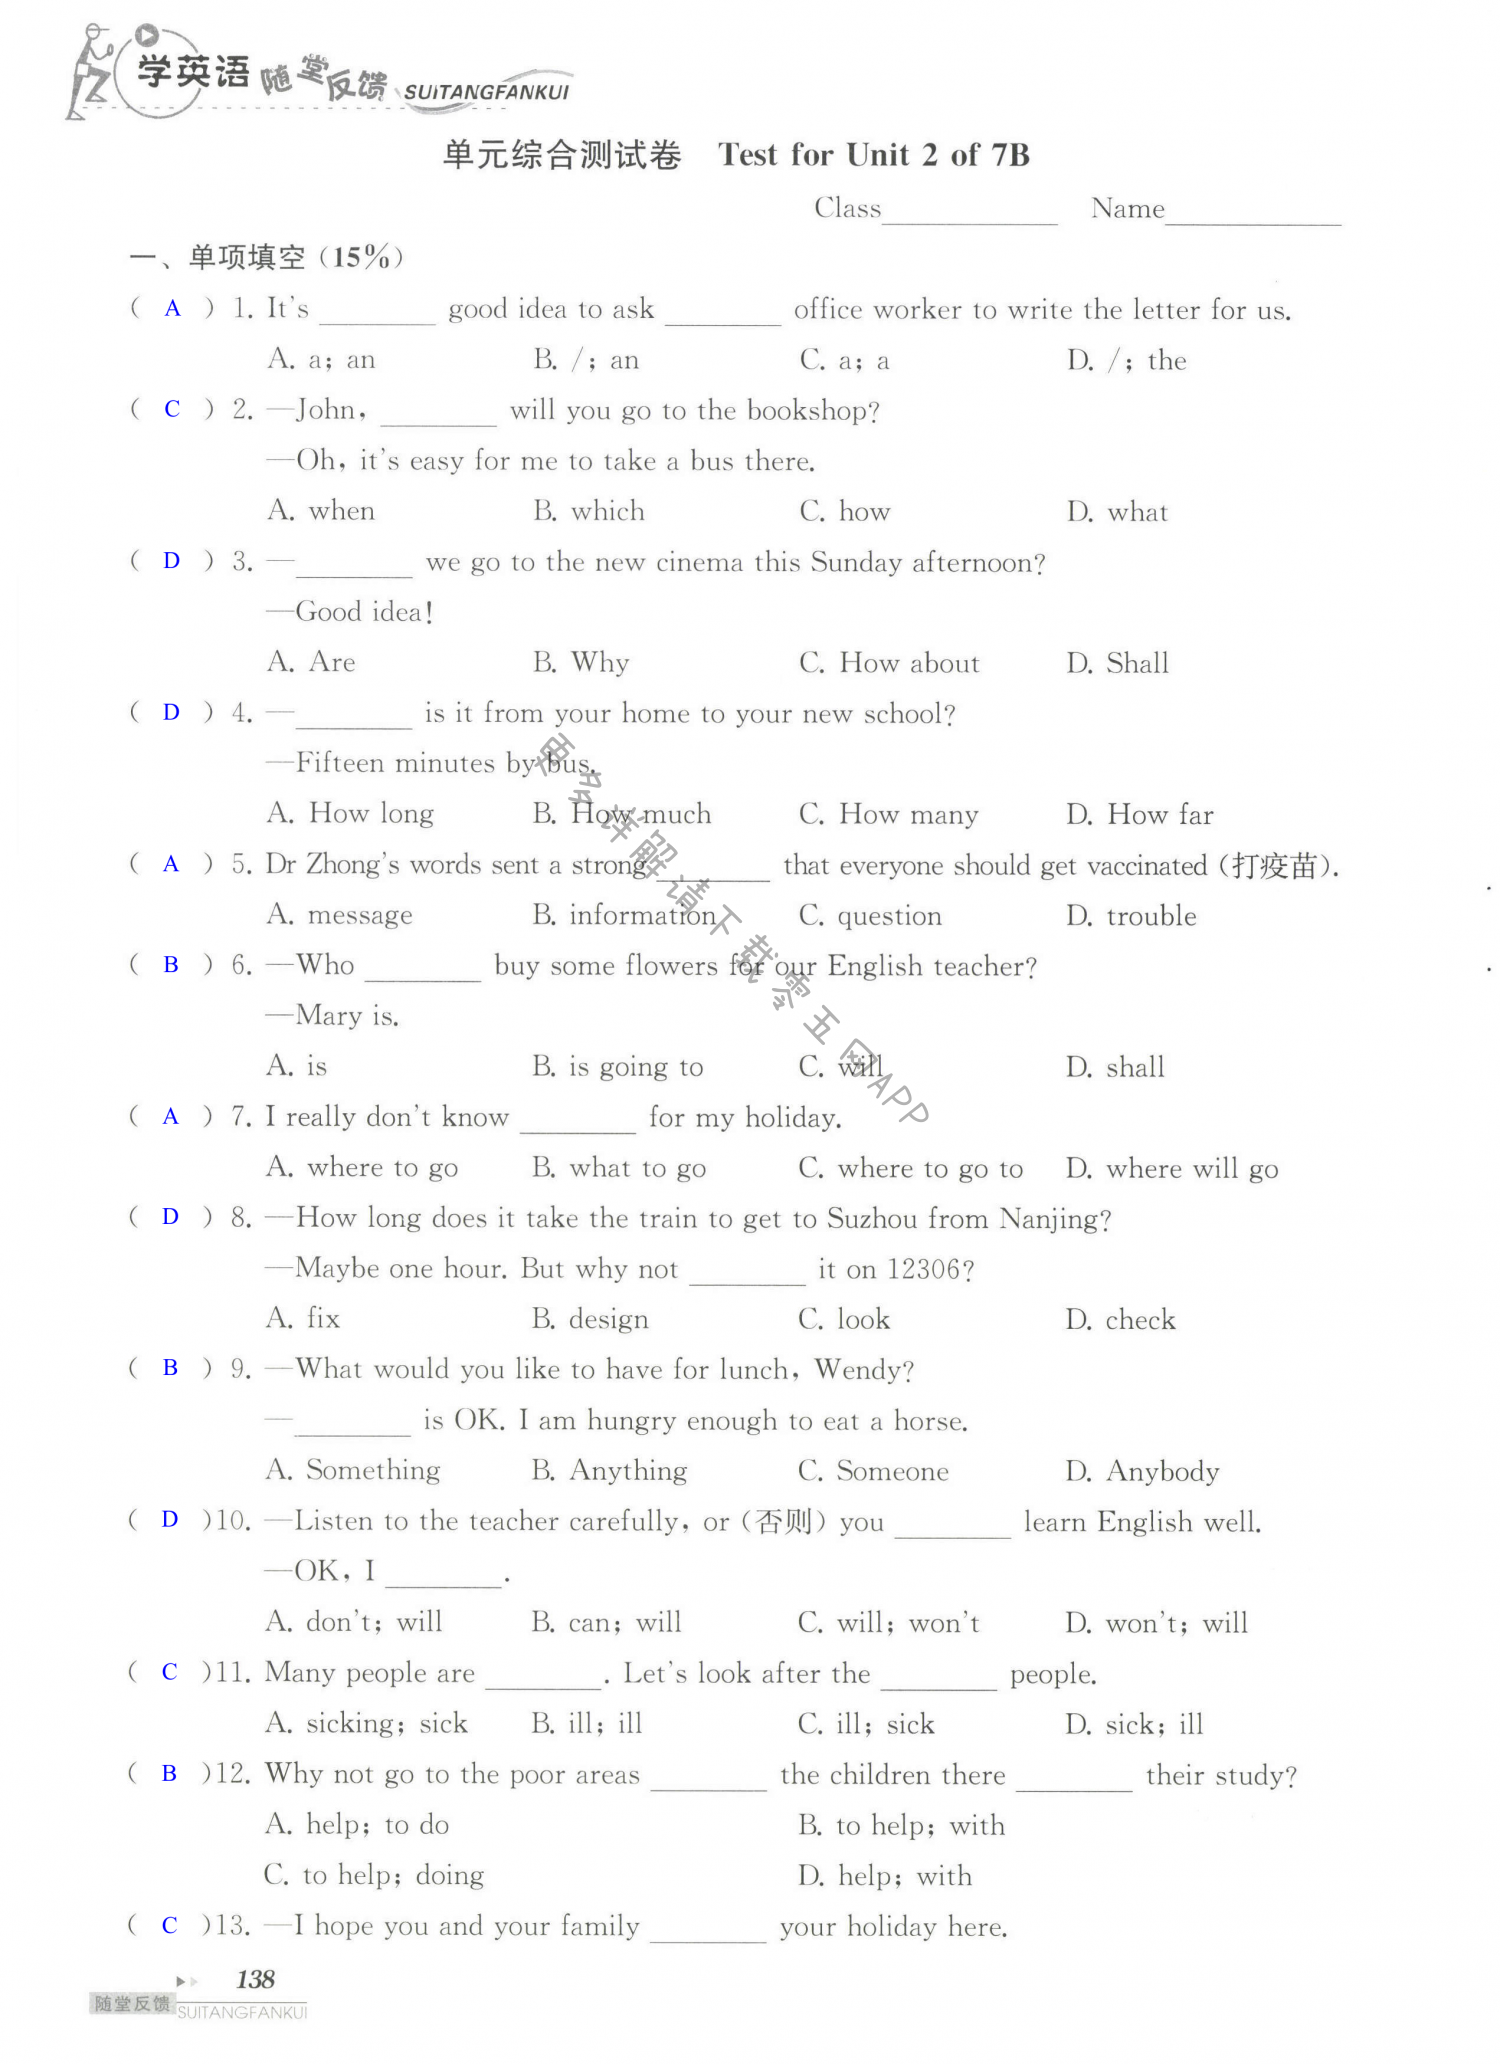 单元综合测试卷  Test for Unit 2 of 7B - 第138页